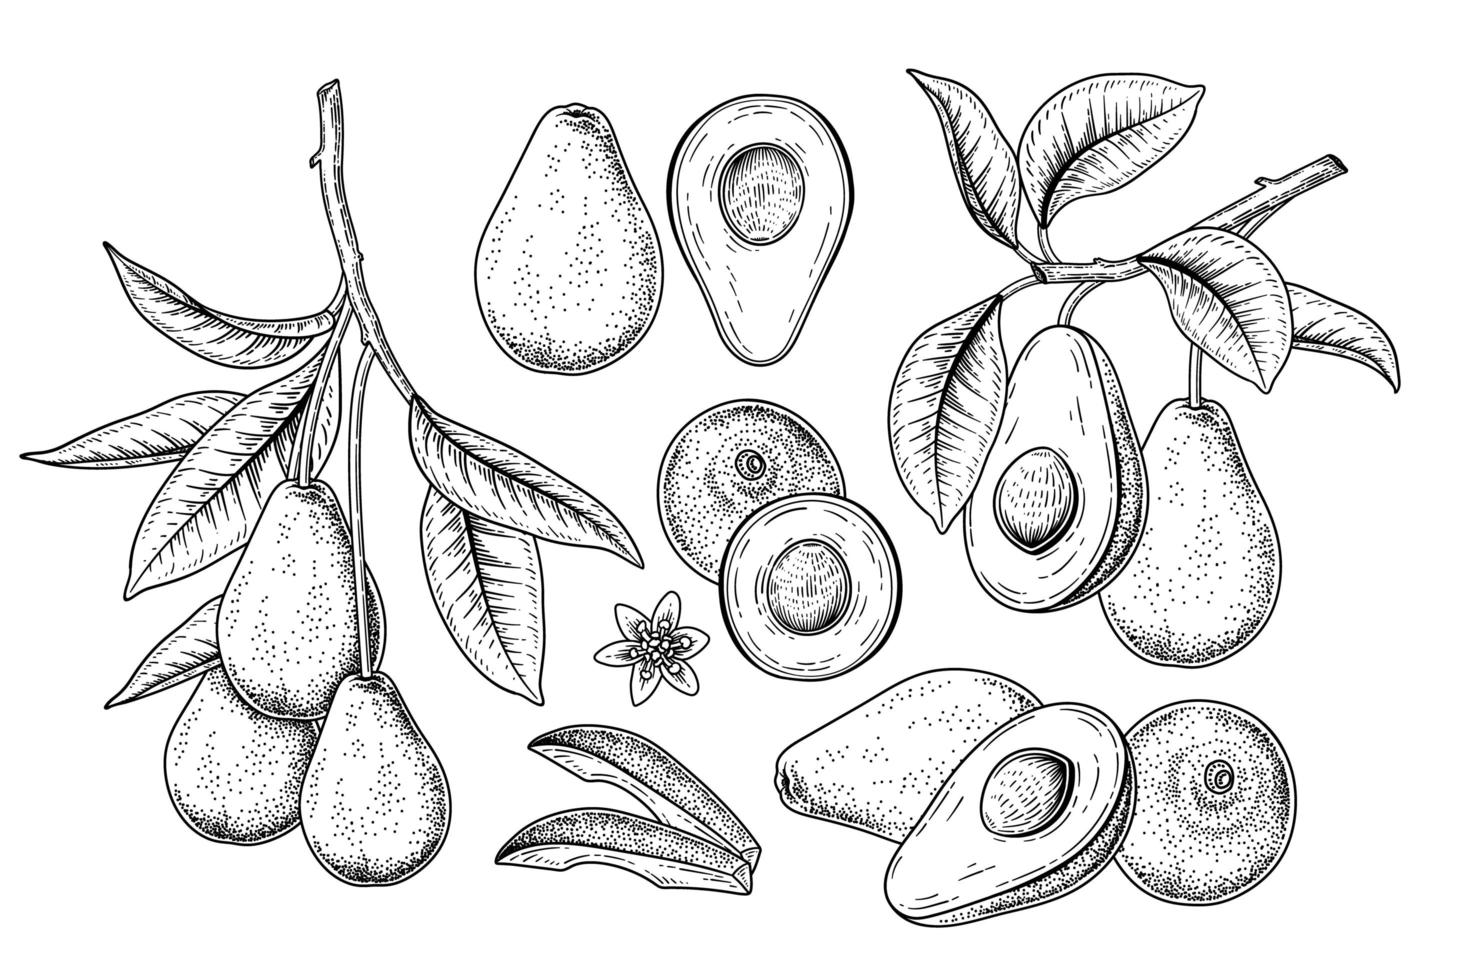 metade inteira e um ramo de abacate com frutas e folhas conjunto decorativo de ilustrações botânicas de esboço desenhado à mão vetor